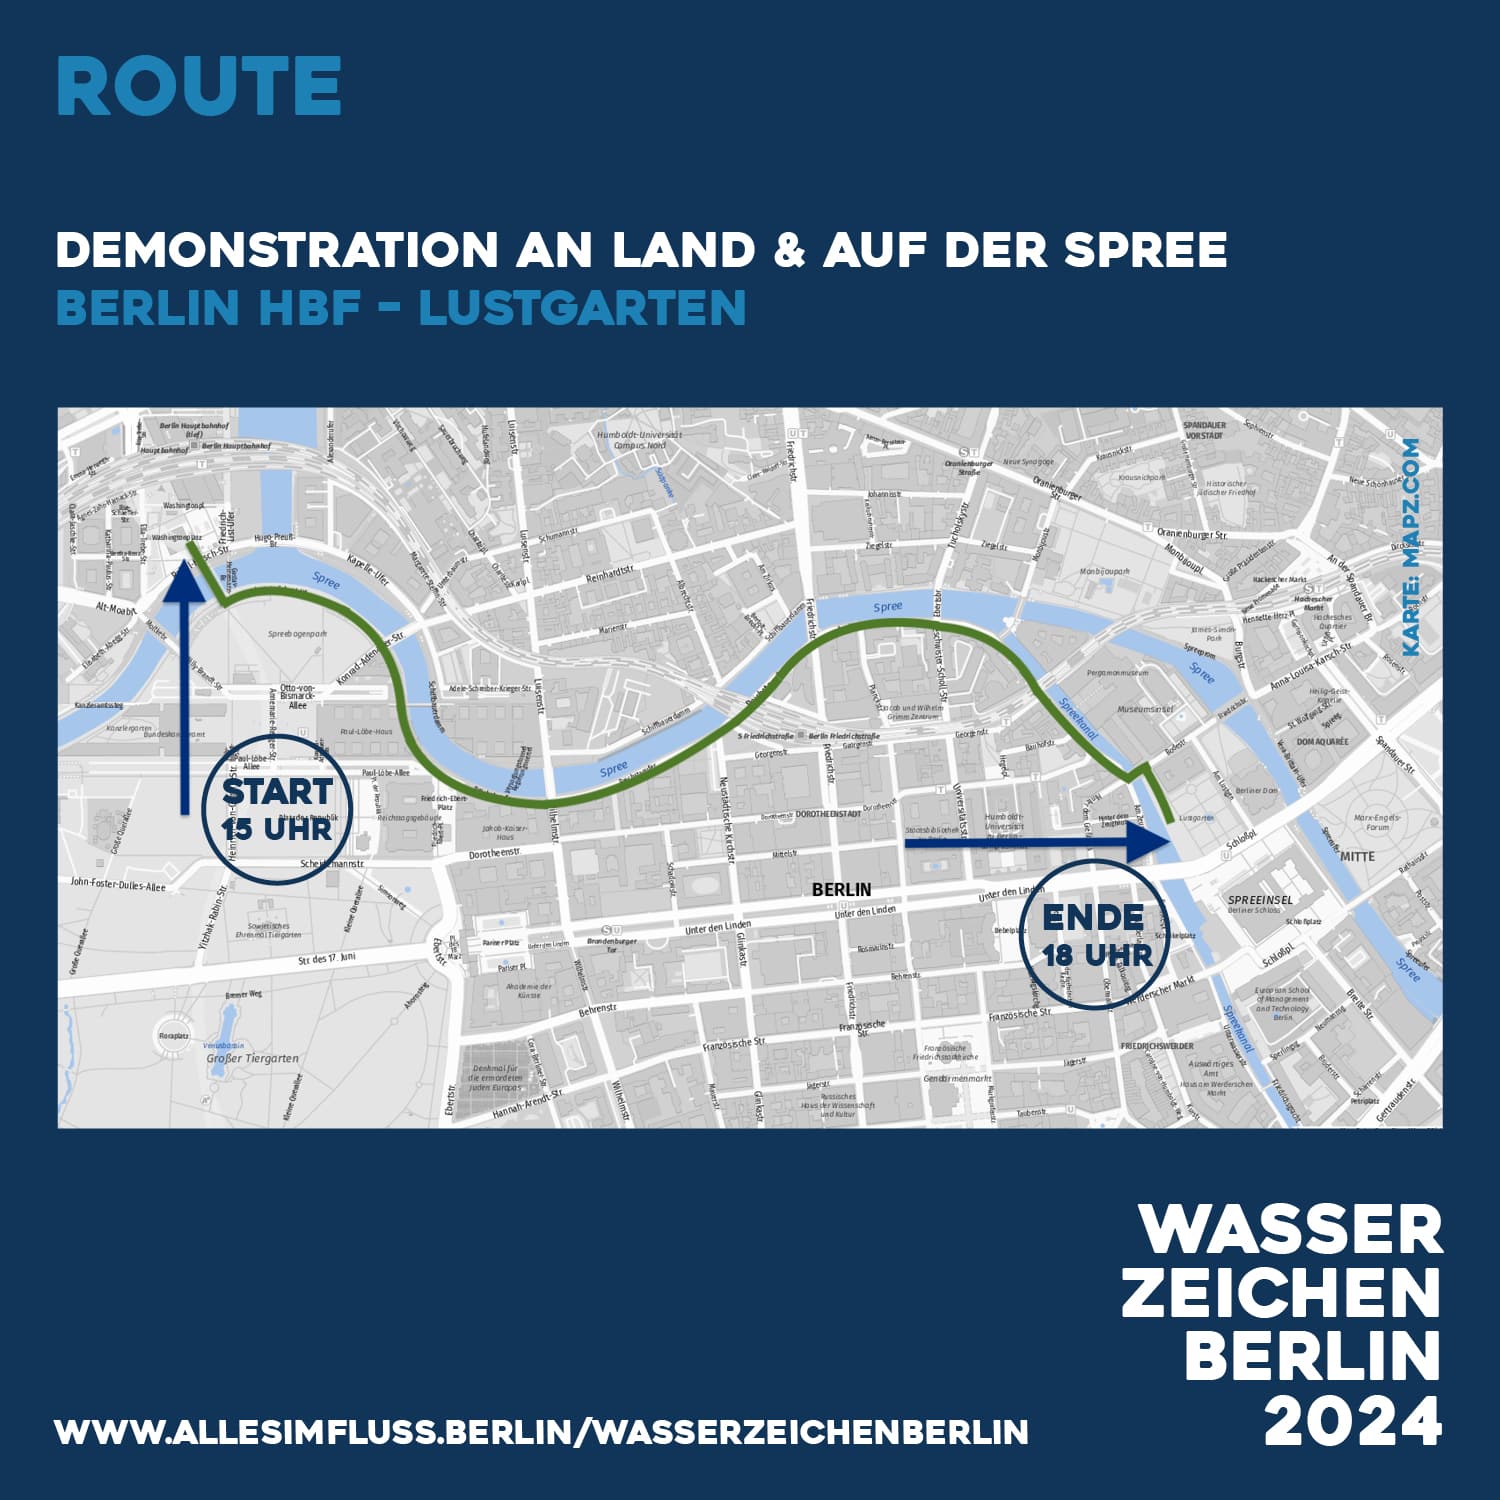 wasserzeichendemo-route